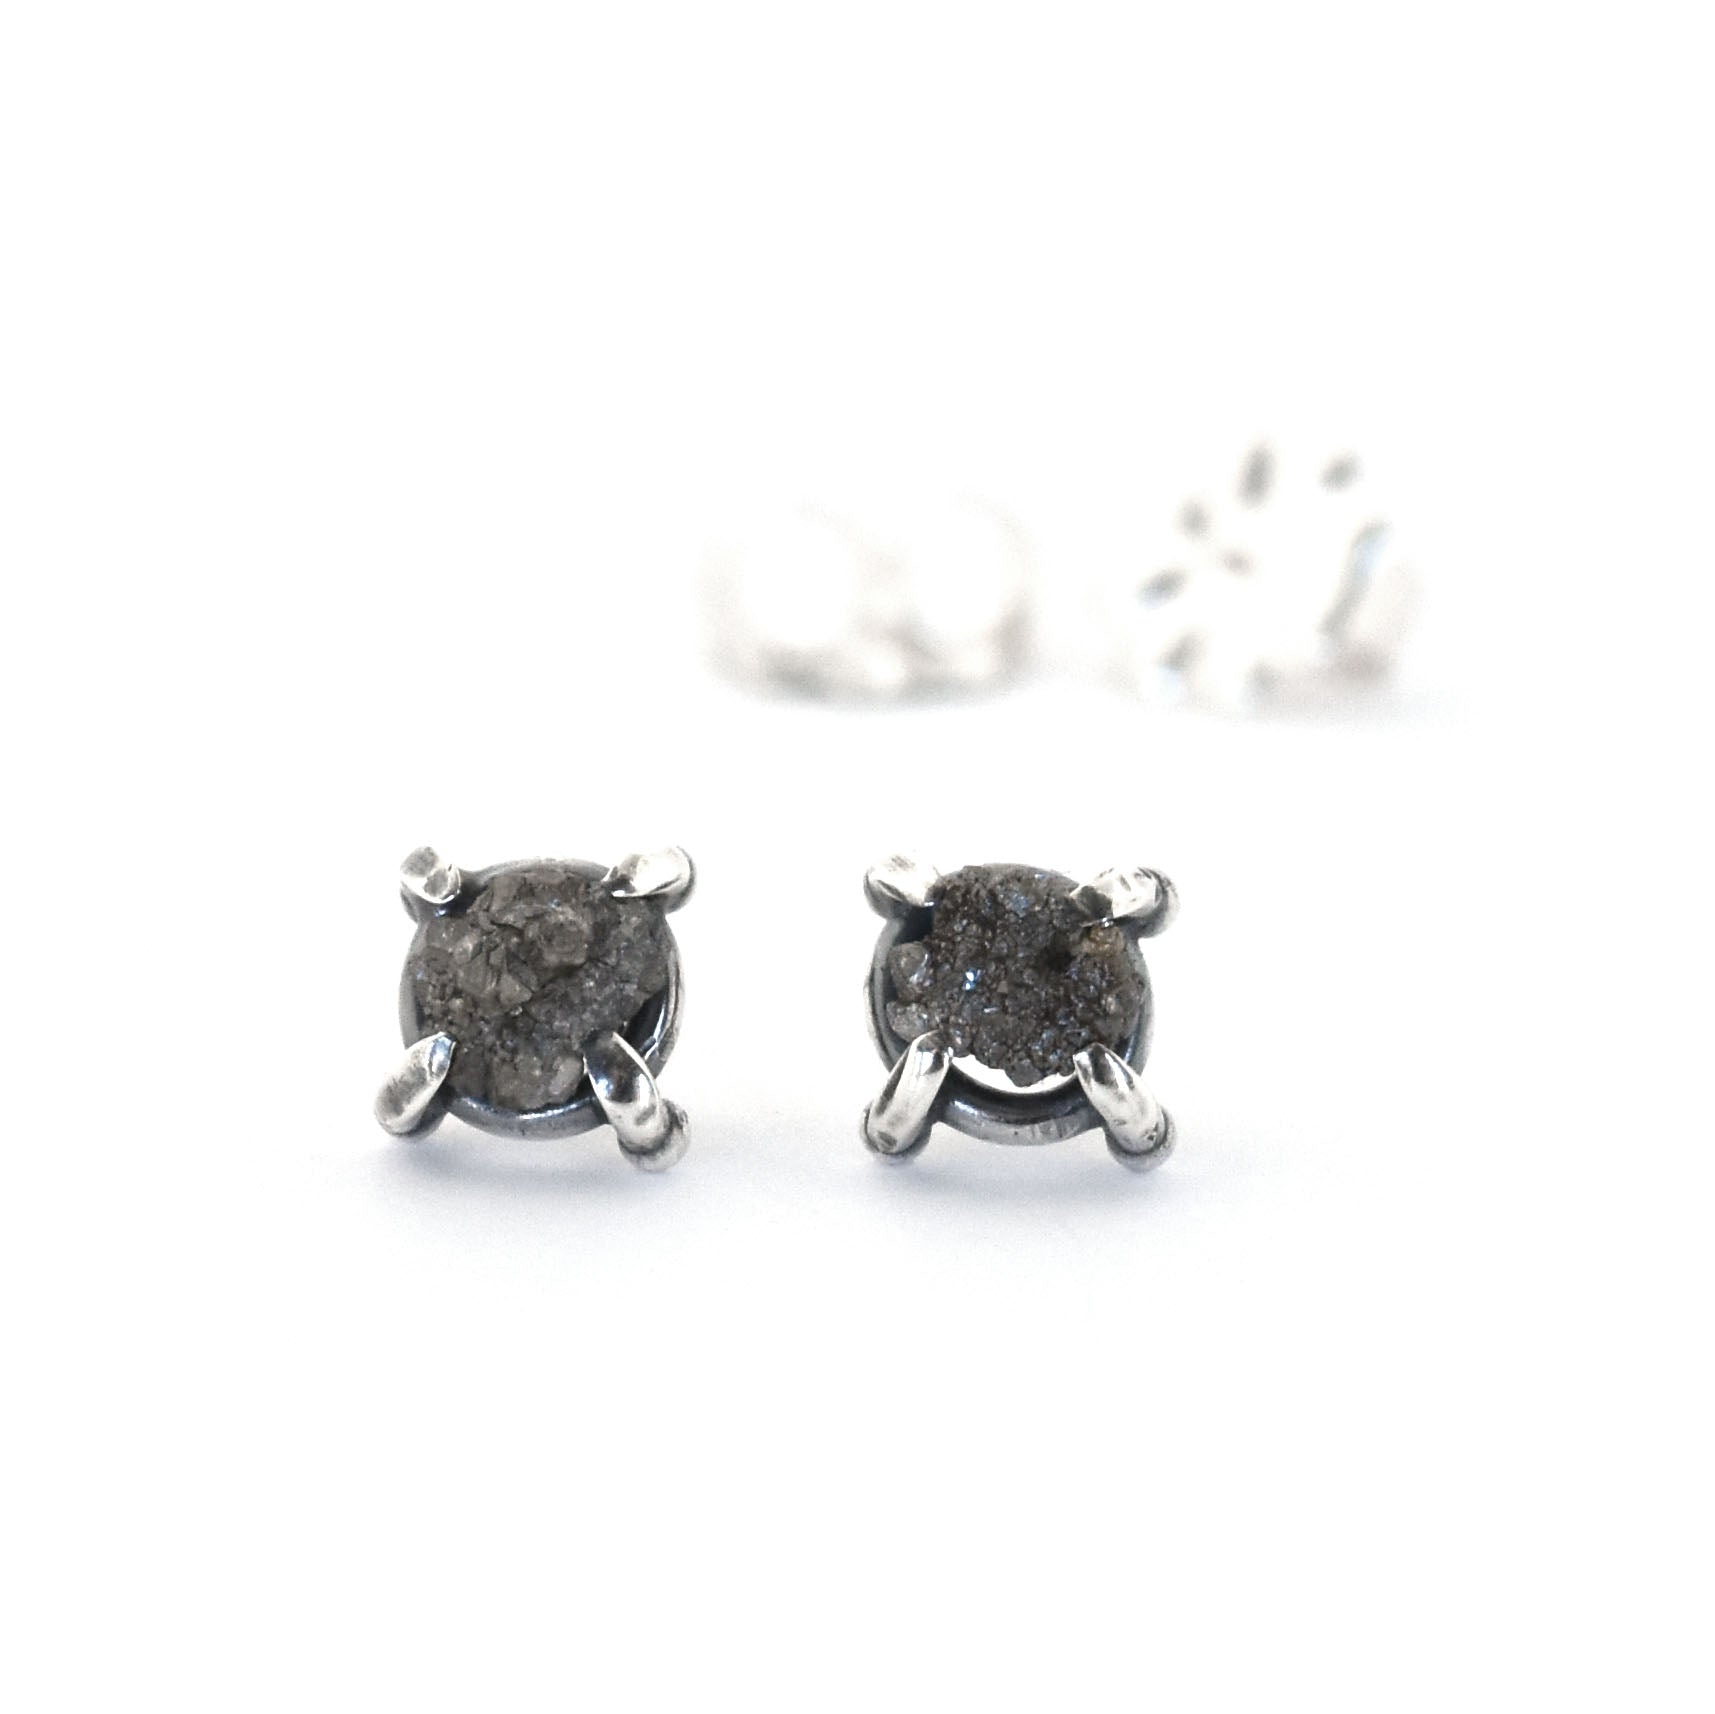 Raw Diamond Post Earrings No. 4 - Silver Earrings   5788 - handmade by Beth Millner Jewelry